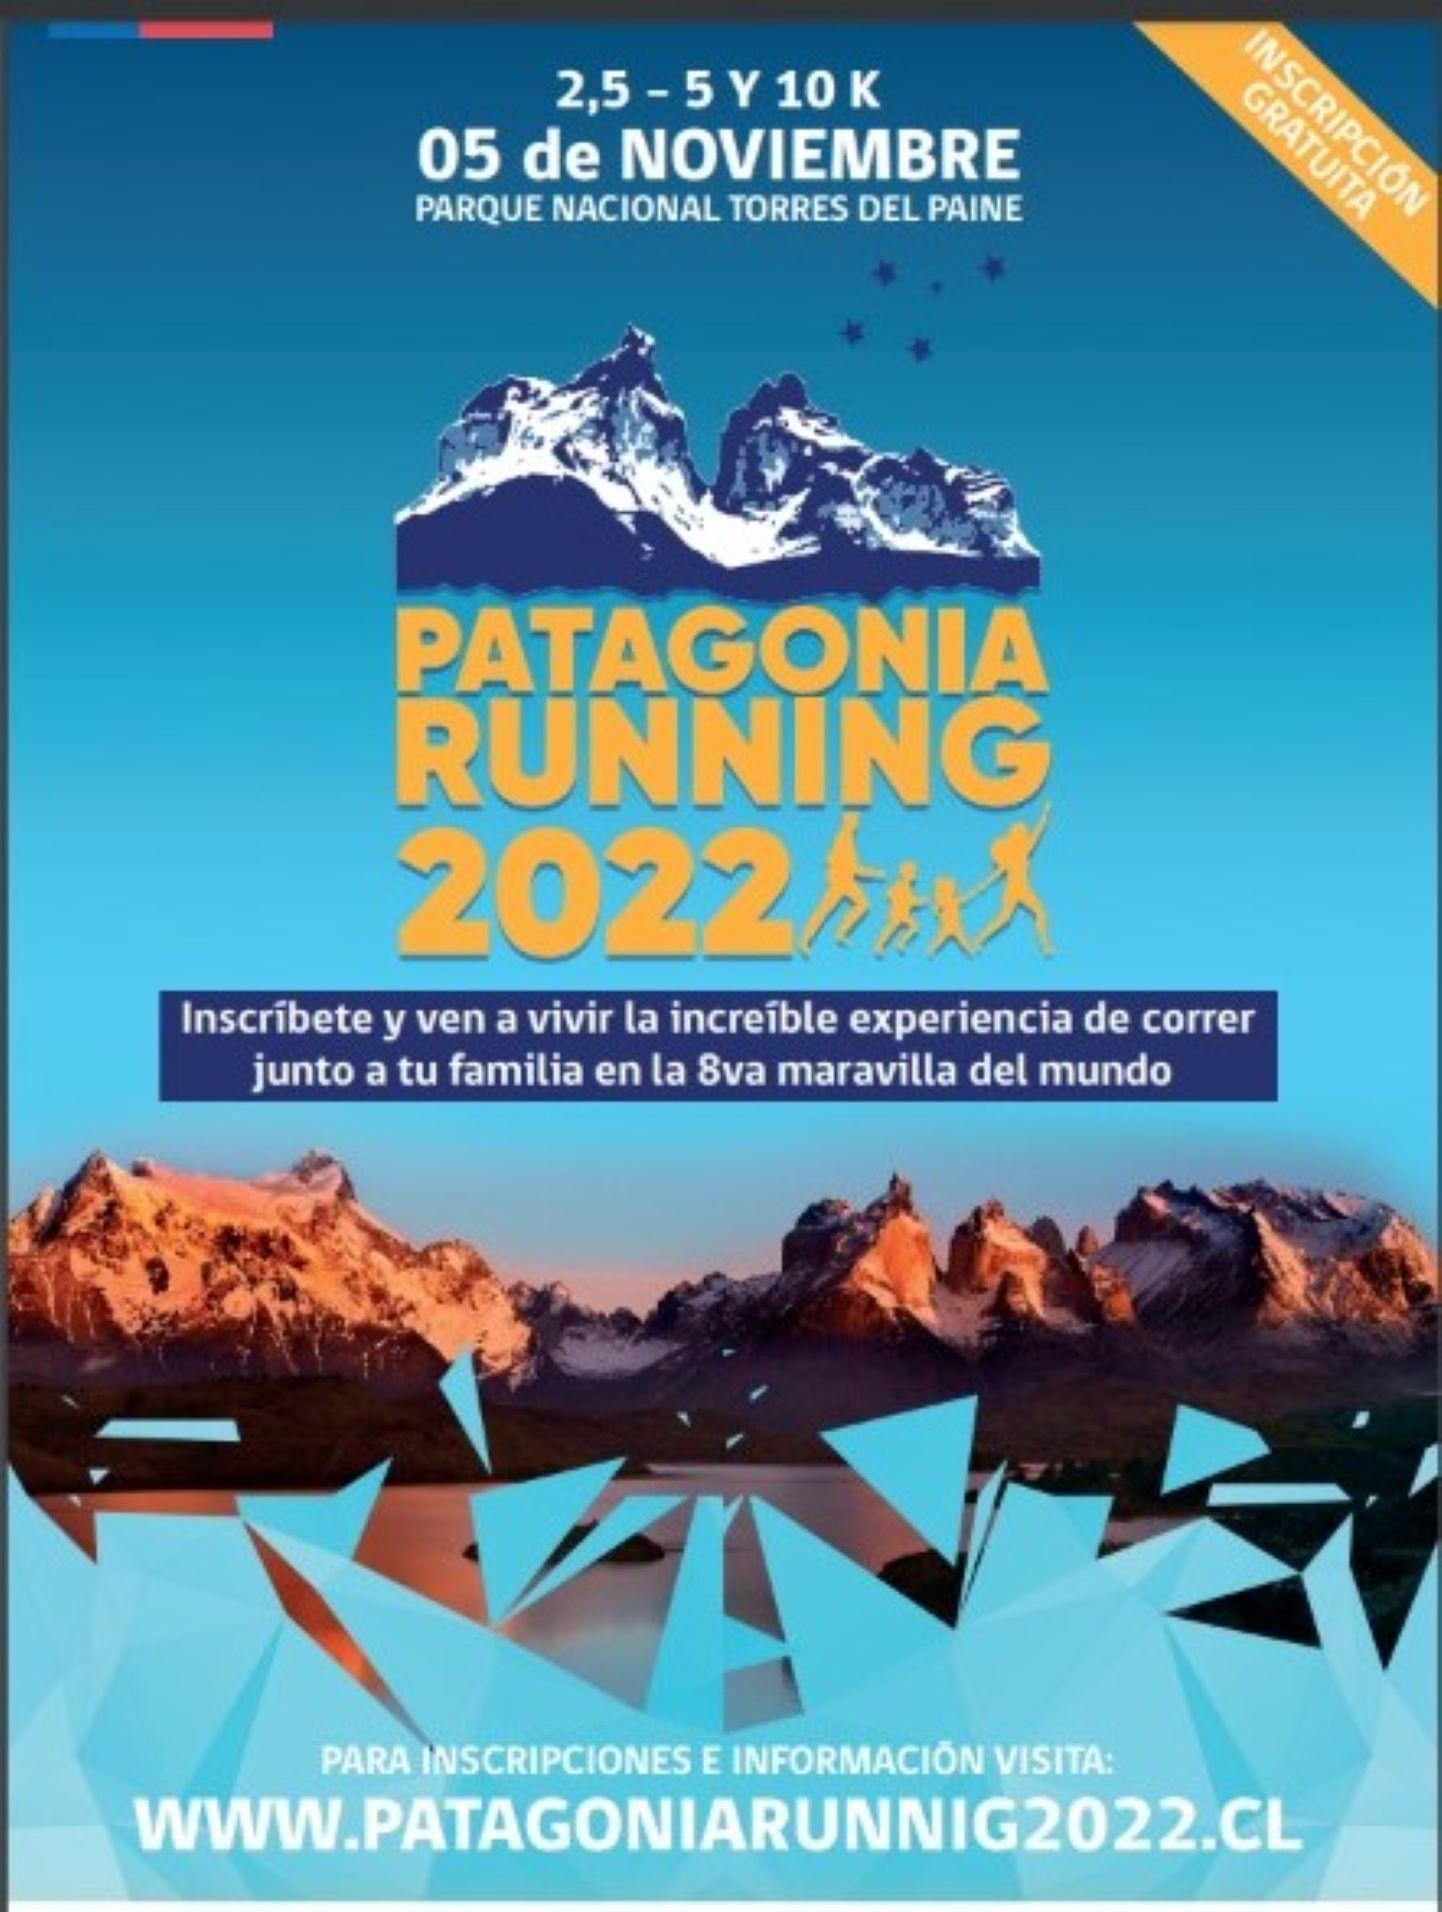 En Cerro Castillo se realizó el lanzamiento oficial de la carrera denominada “Patagonia Running 2022”